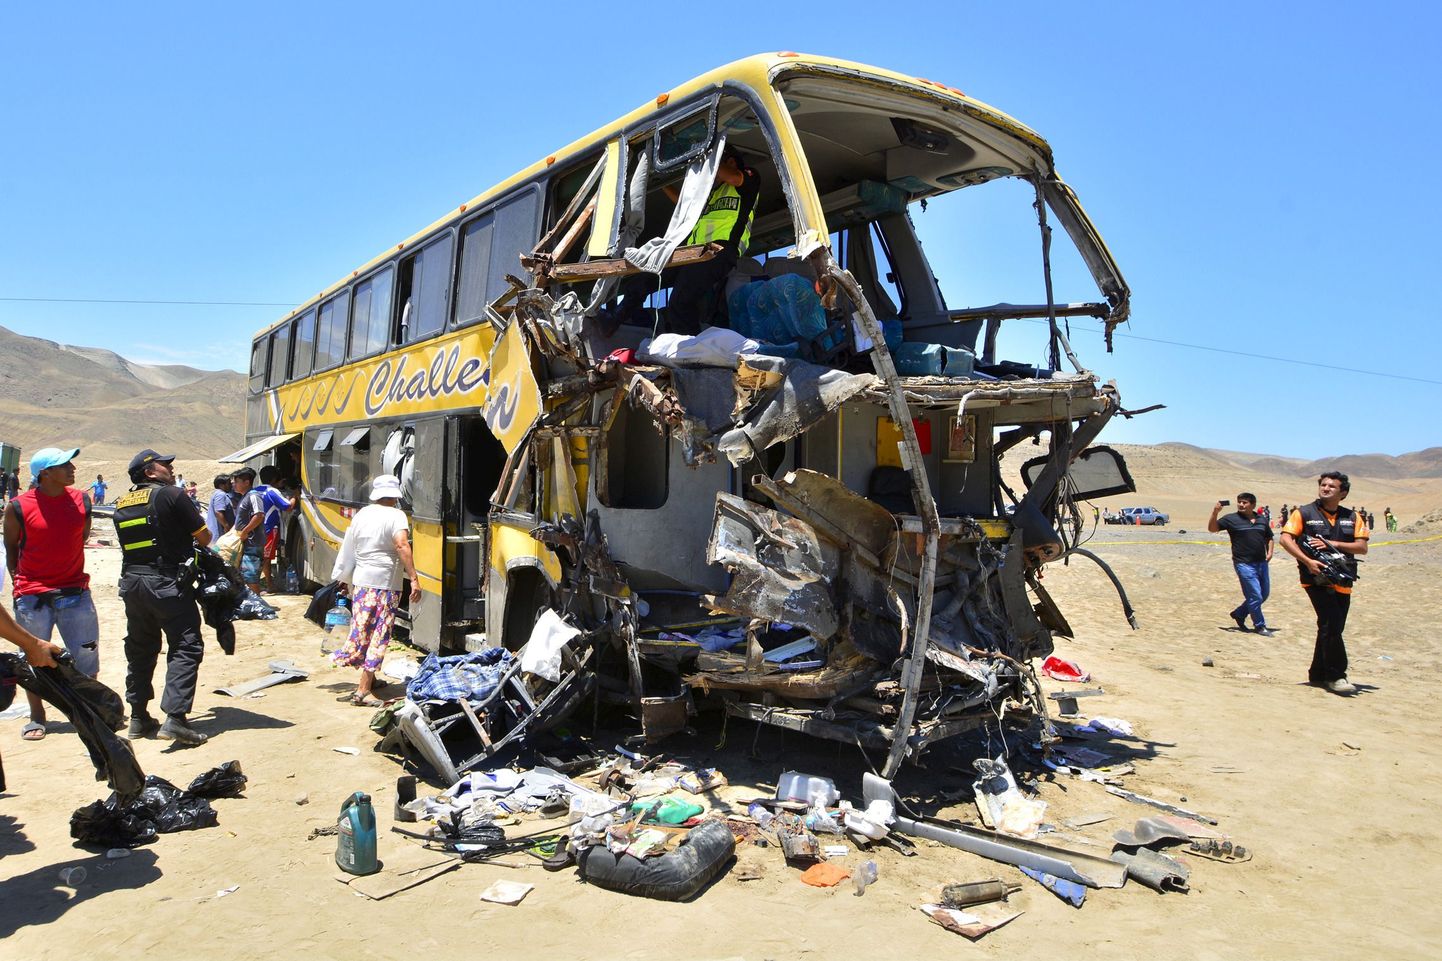 Pildil on Pan America maanteel eelmisel aastal õnnetusse sattunud buss.